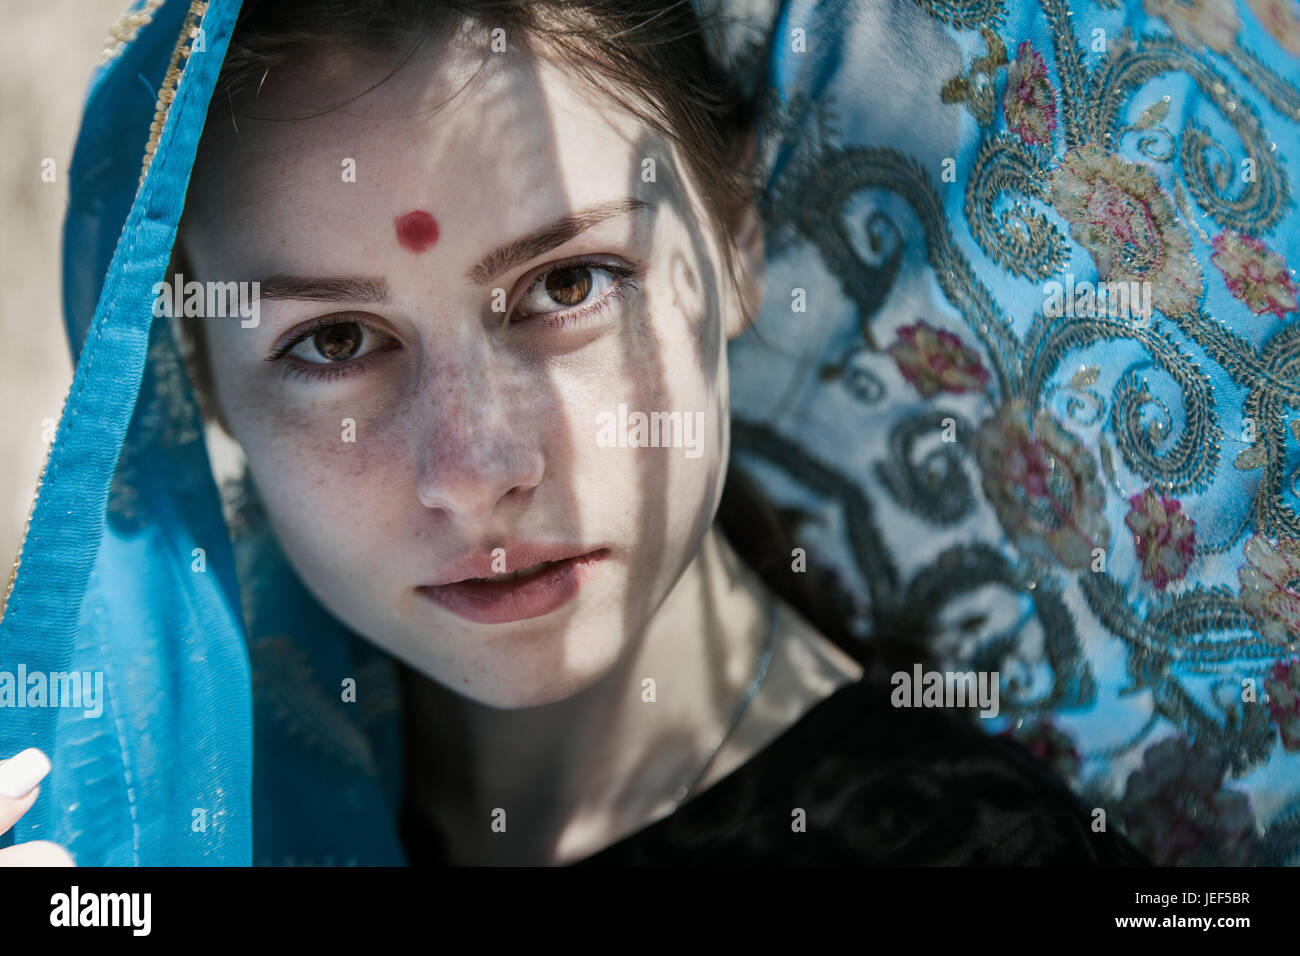 La jeune fille l'recouvert d'un sari, un portrait visage Banque D'Images